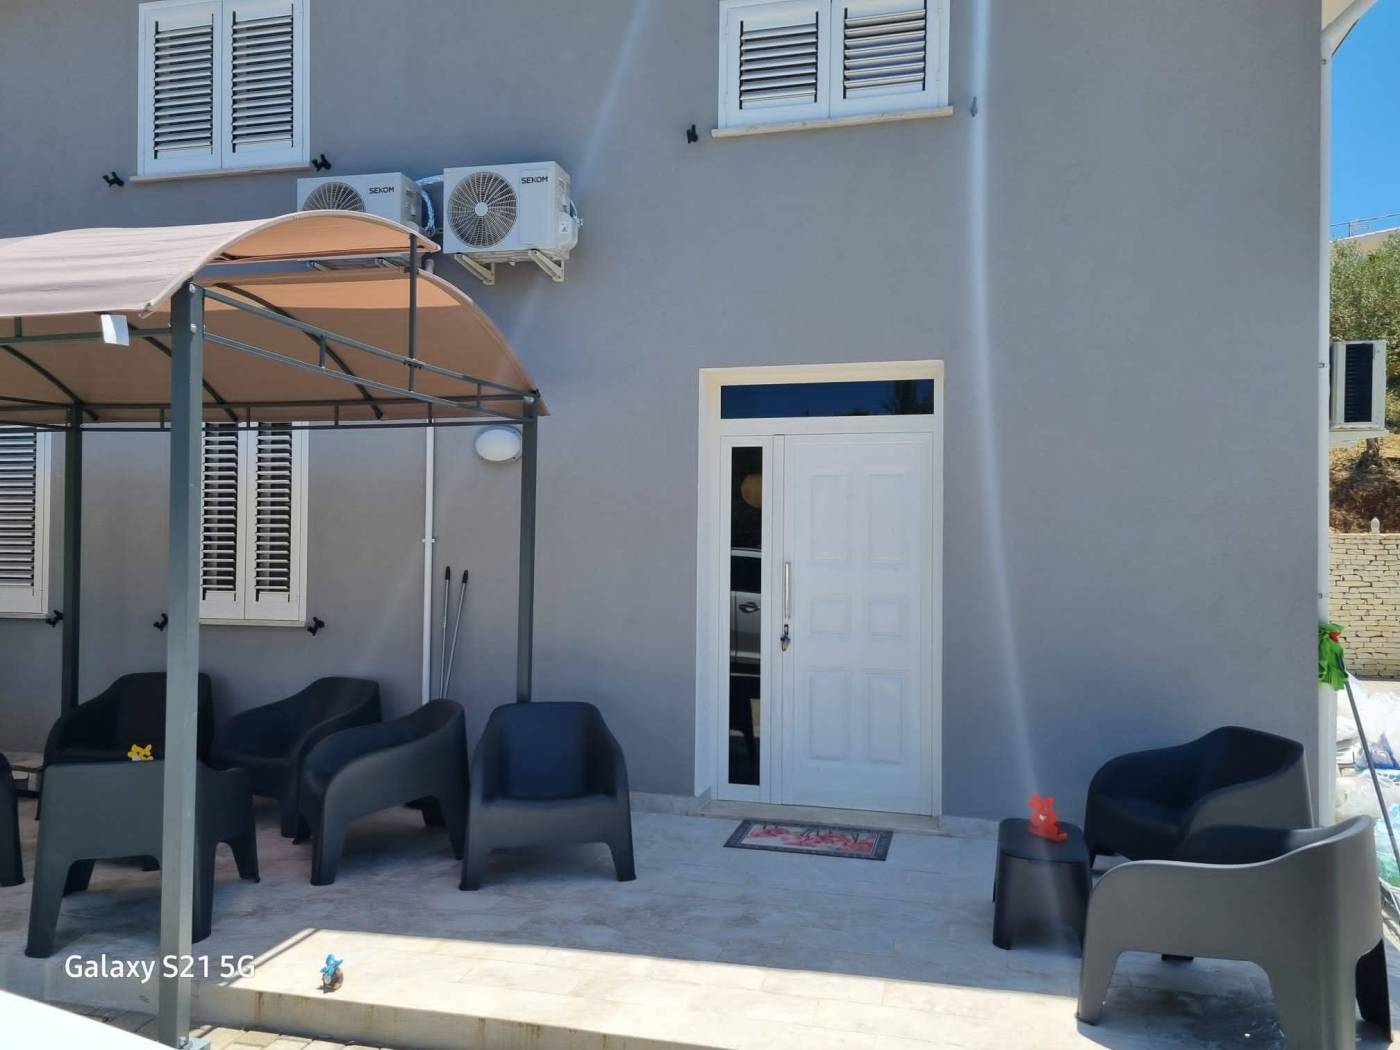 Immobiliare Spica propone in affitto un grazioso appartamento nella periferia di Balestrate in contrada Patti Tobia a meno di cinque minuti dal mare 